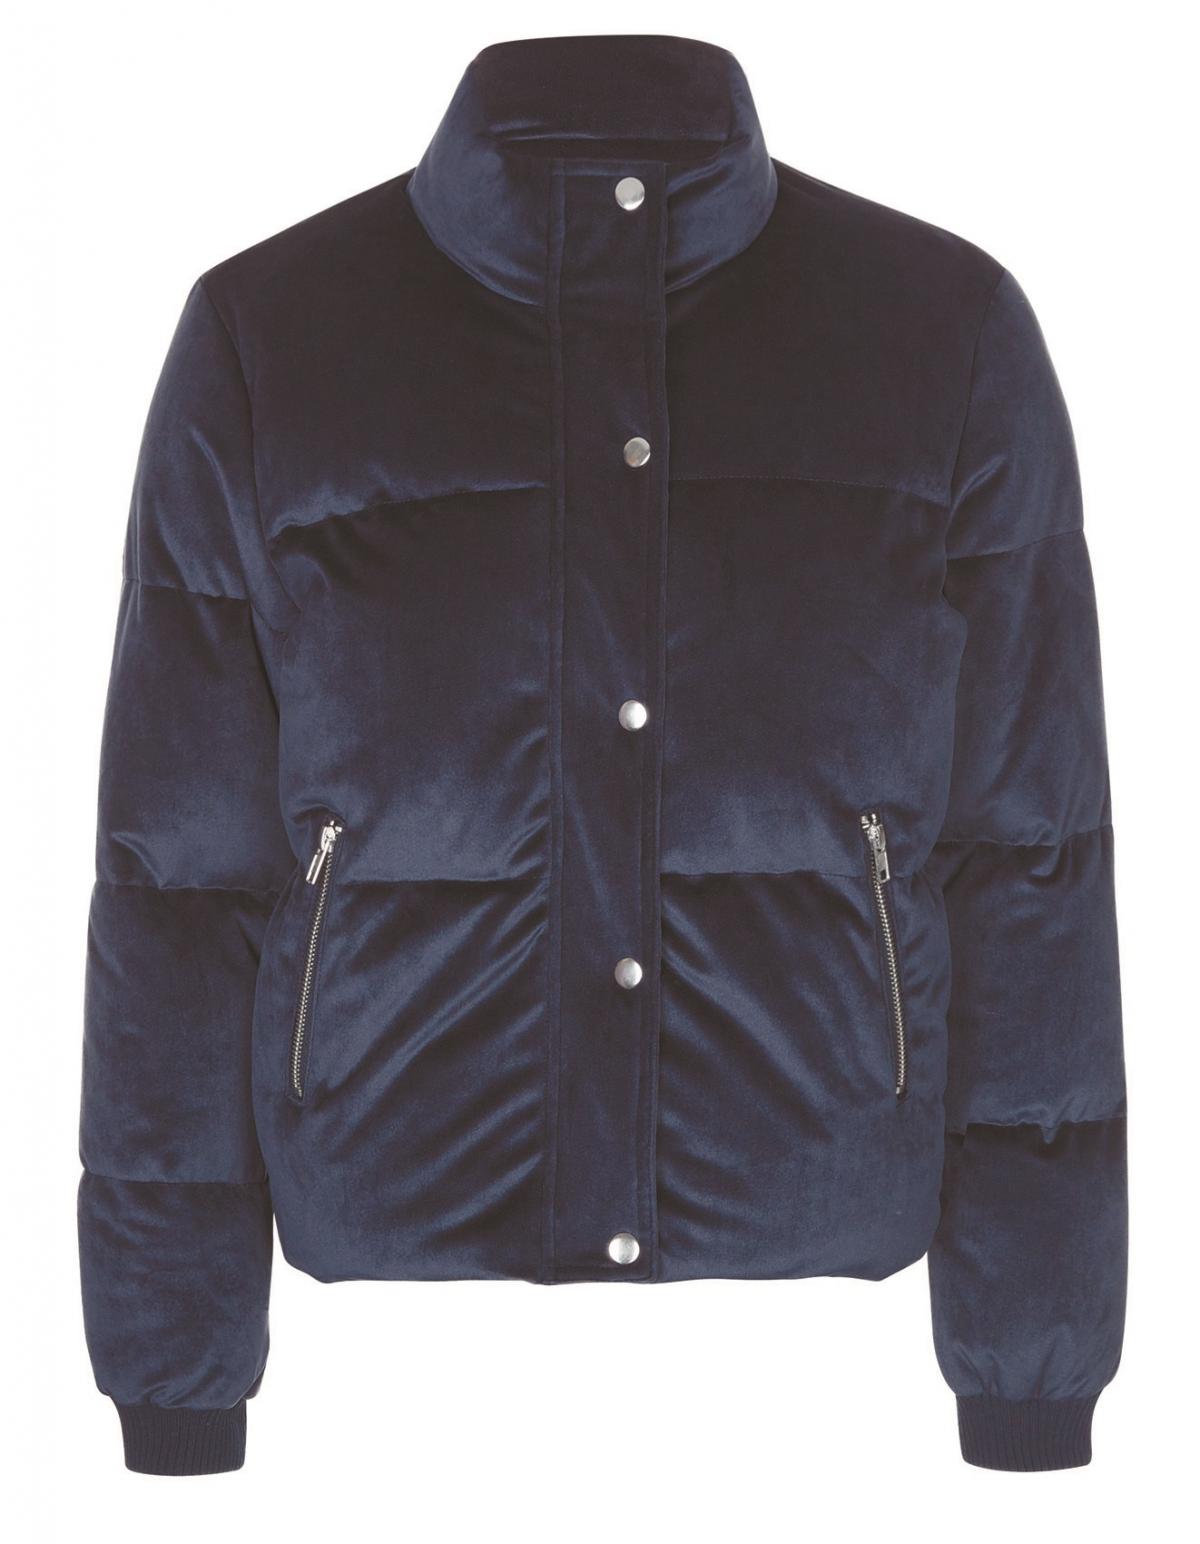 New Look, Navy Velvet Puffer Jacket, £32.99